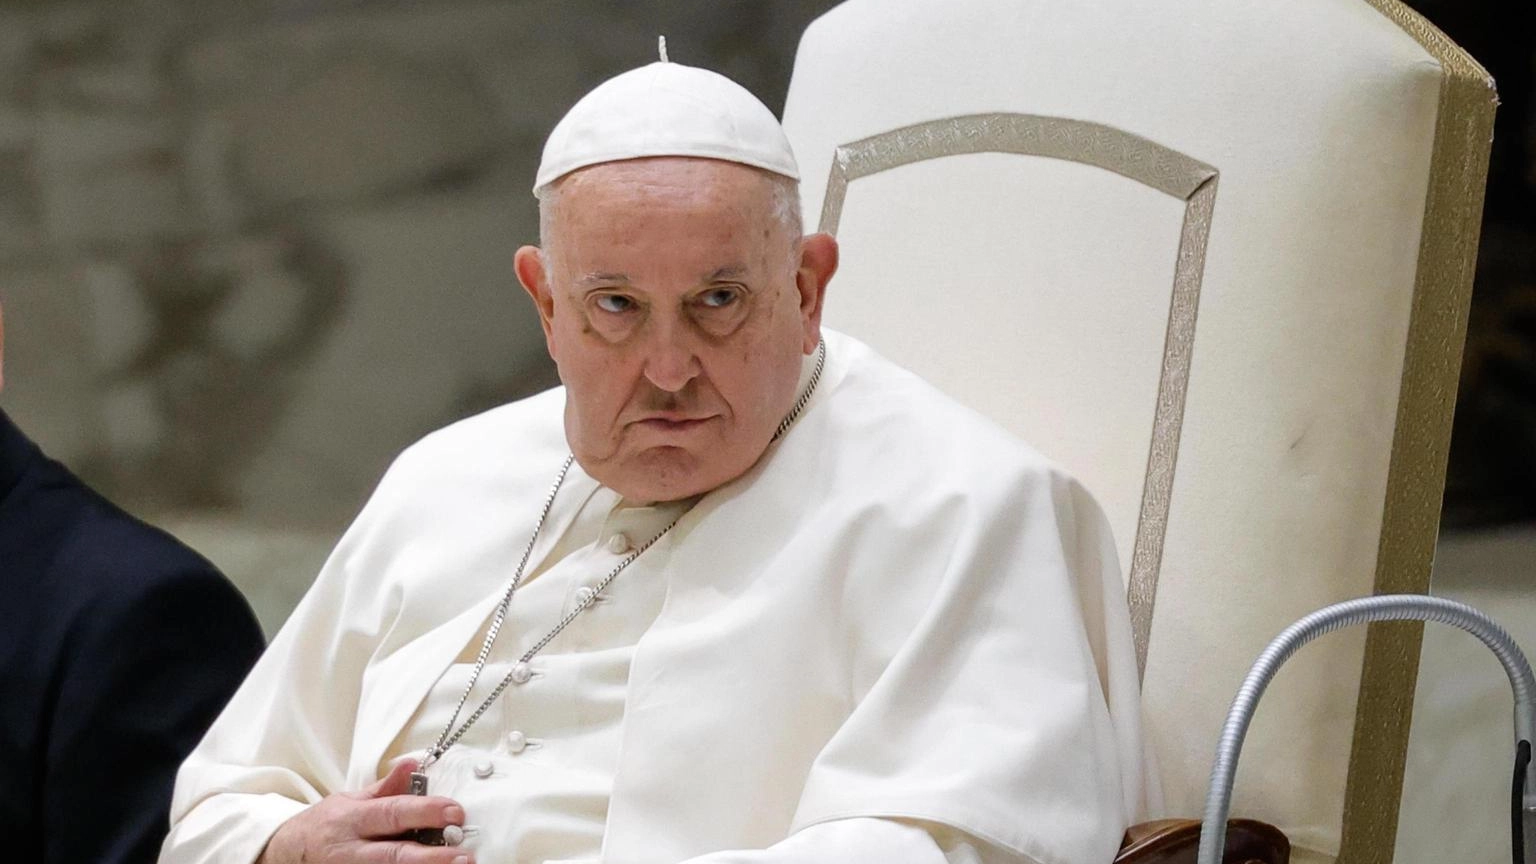 Il Papa ai fedeli: "Non sto ancora bene". Infiammazione ai polmoni, continua la cura